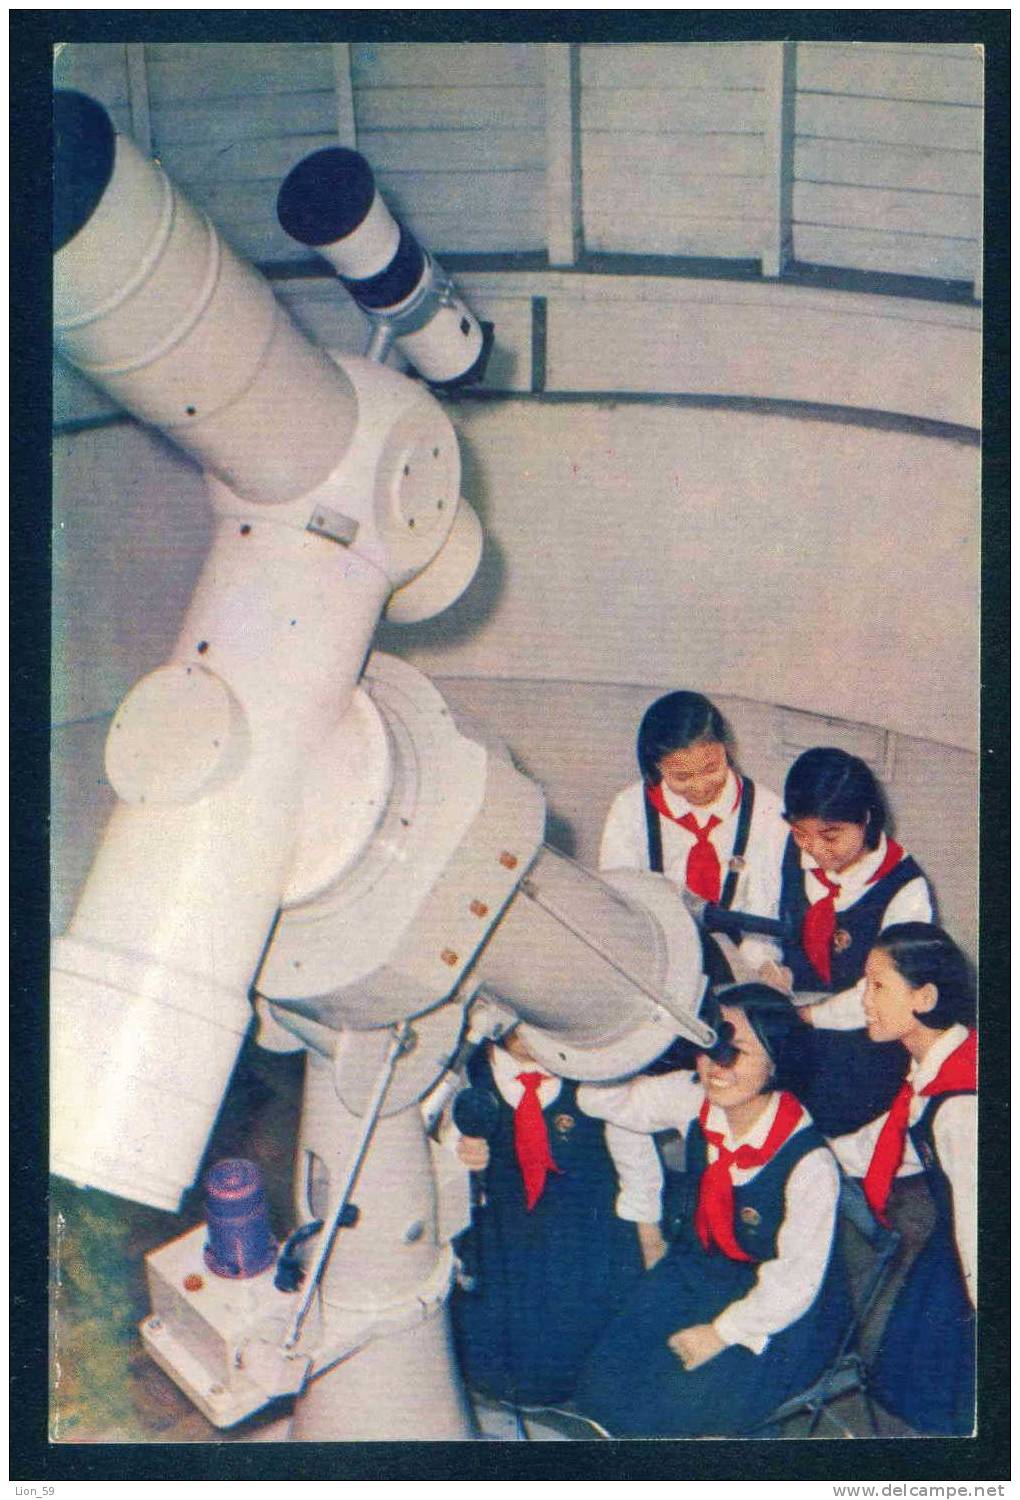 Pyongyang - Pioneer , Astronomy TELESCOPE - North Korea Corée Du Nord 109060 - Corea Del Norte